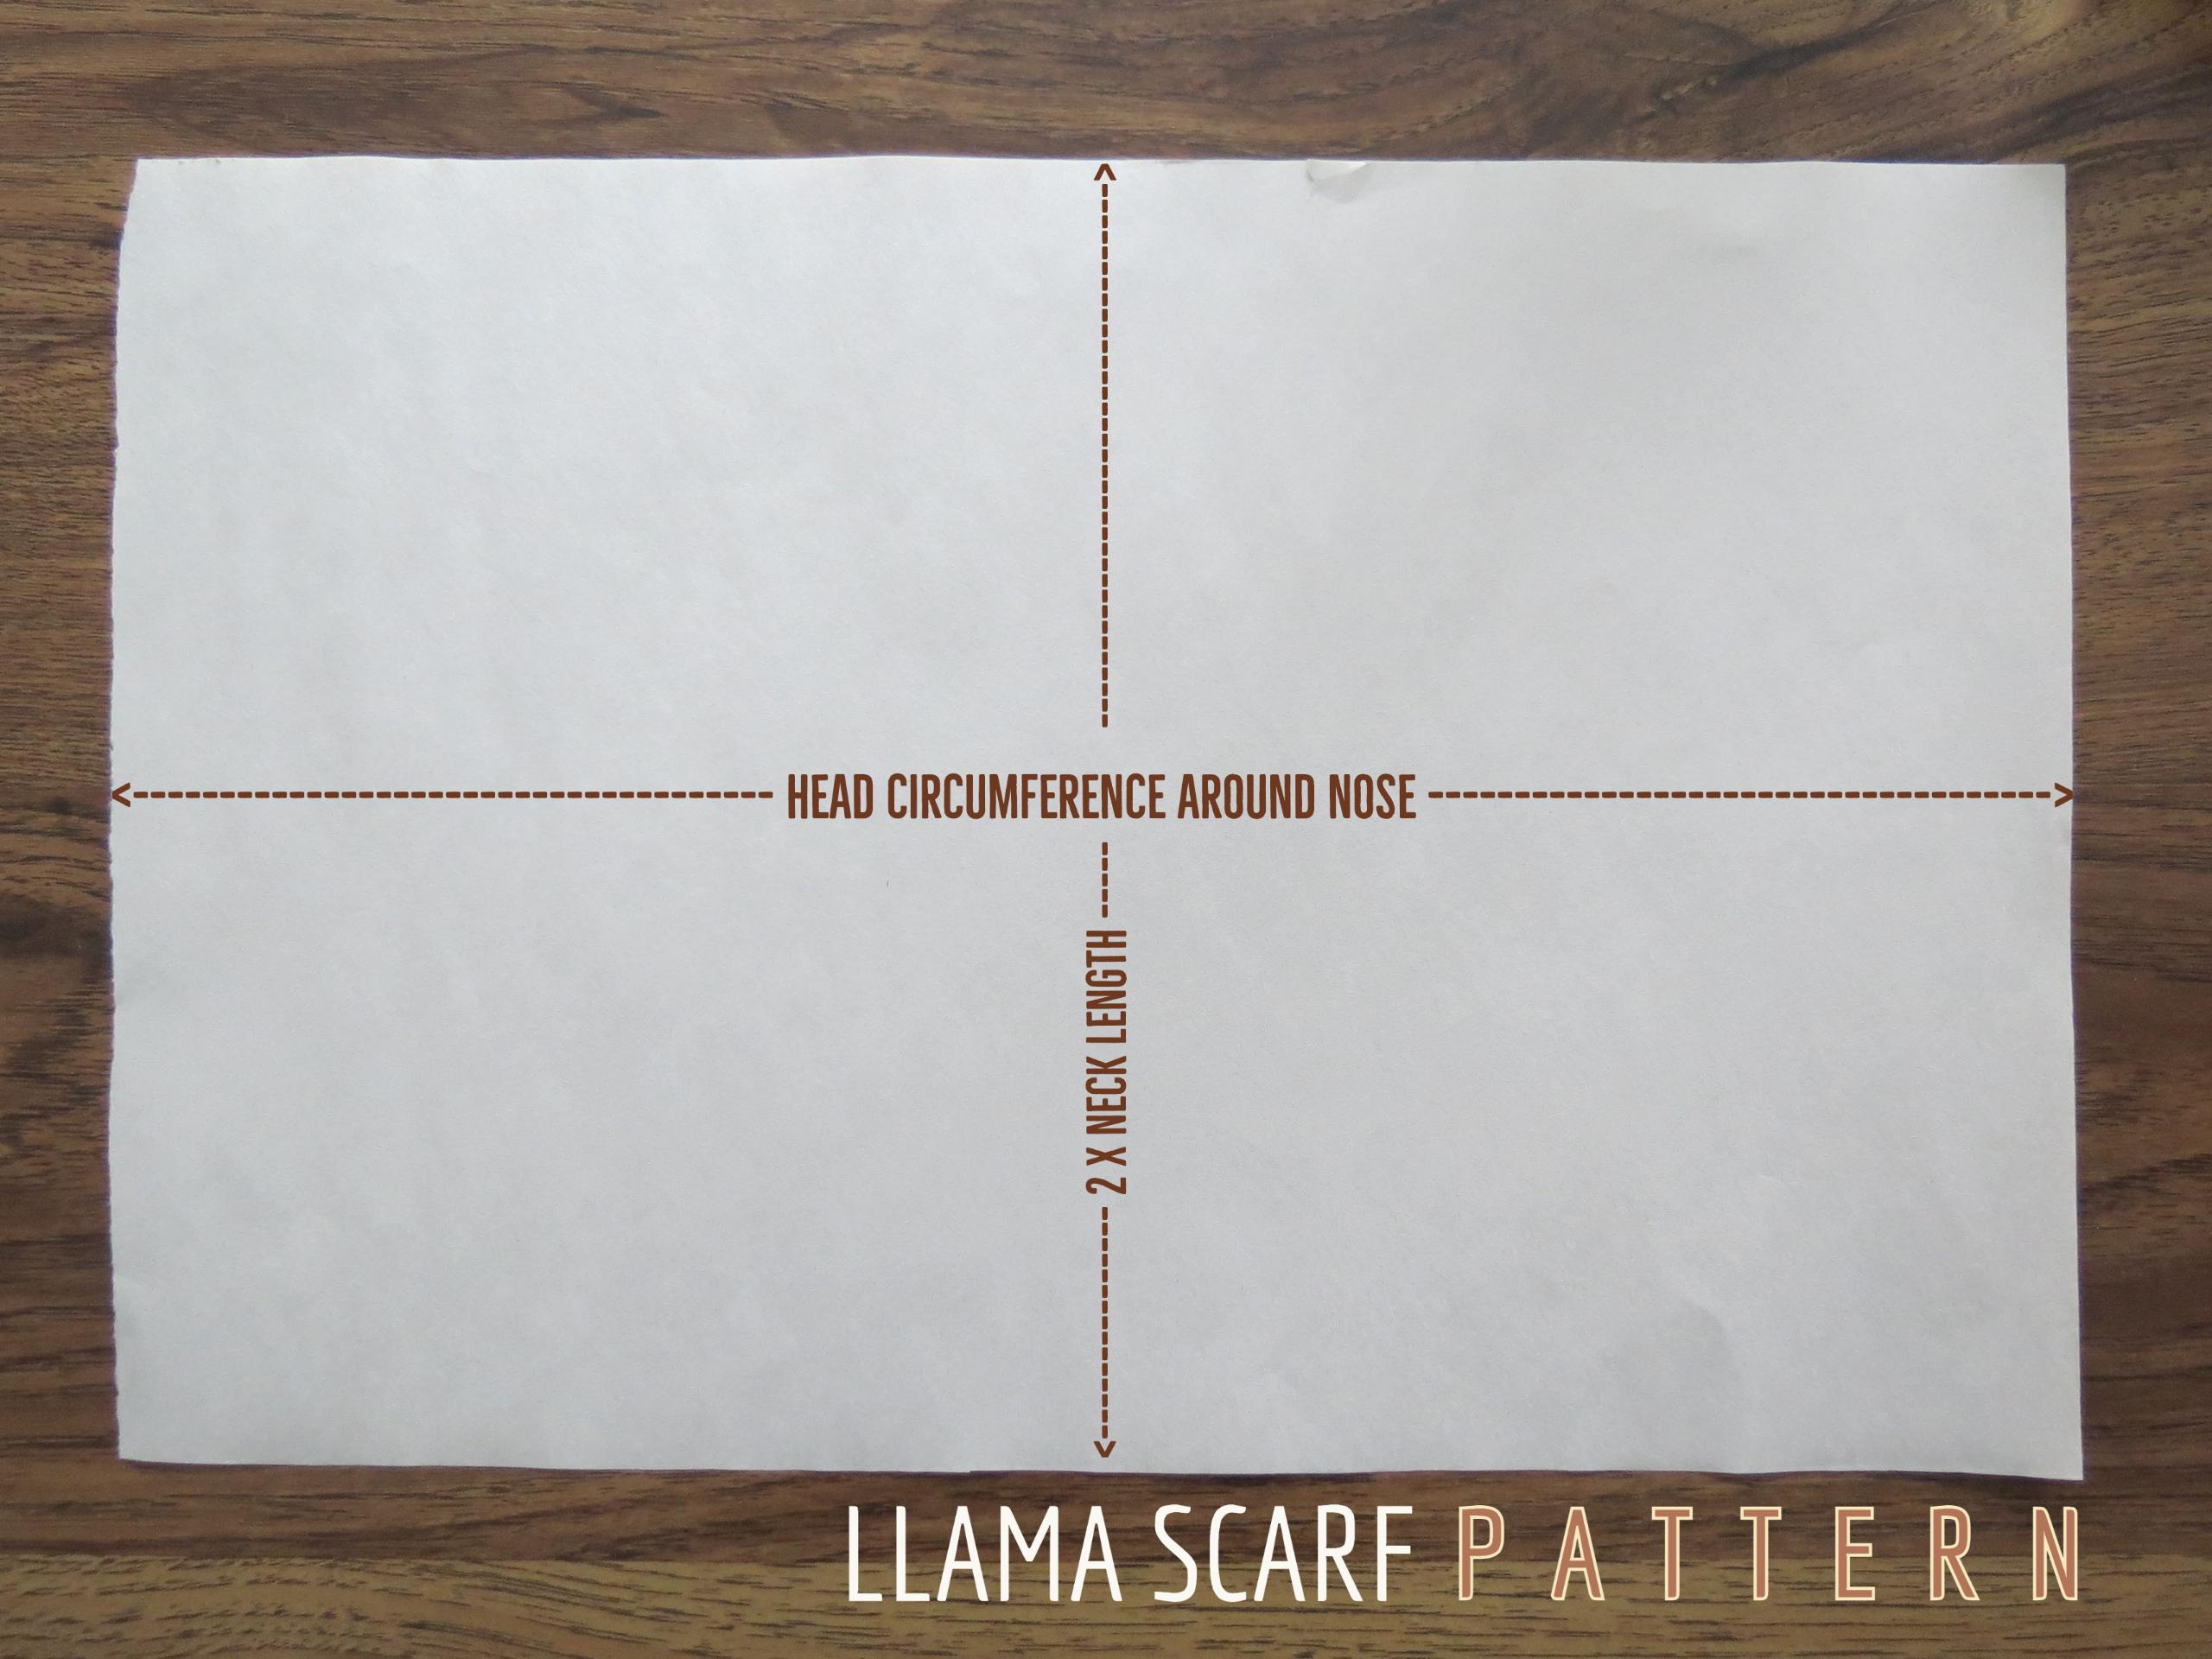 Llama Scarf Pattern.jpg